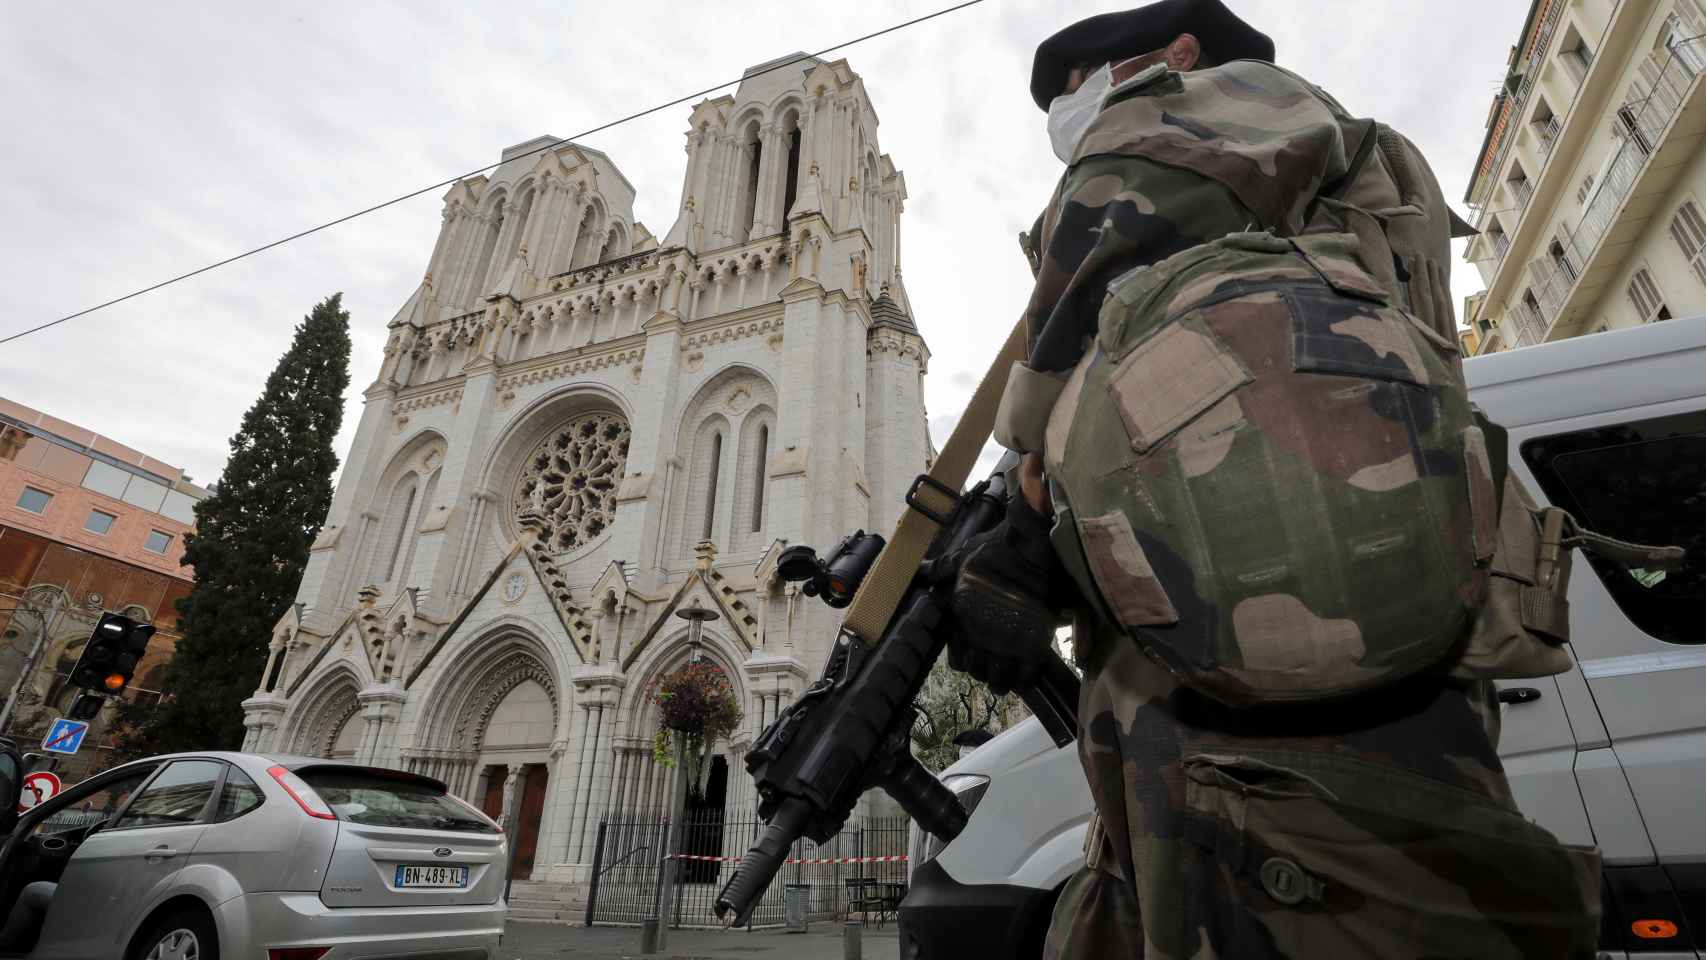 Un militar armado patrulla en torno a la iglesia de Notre-Dame de Niza tras el atentado de este jueves.